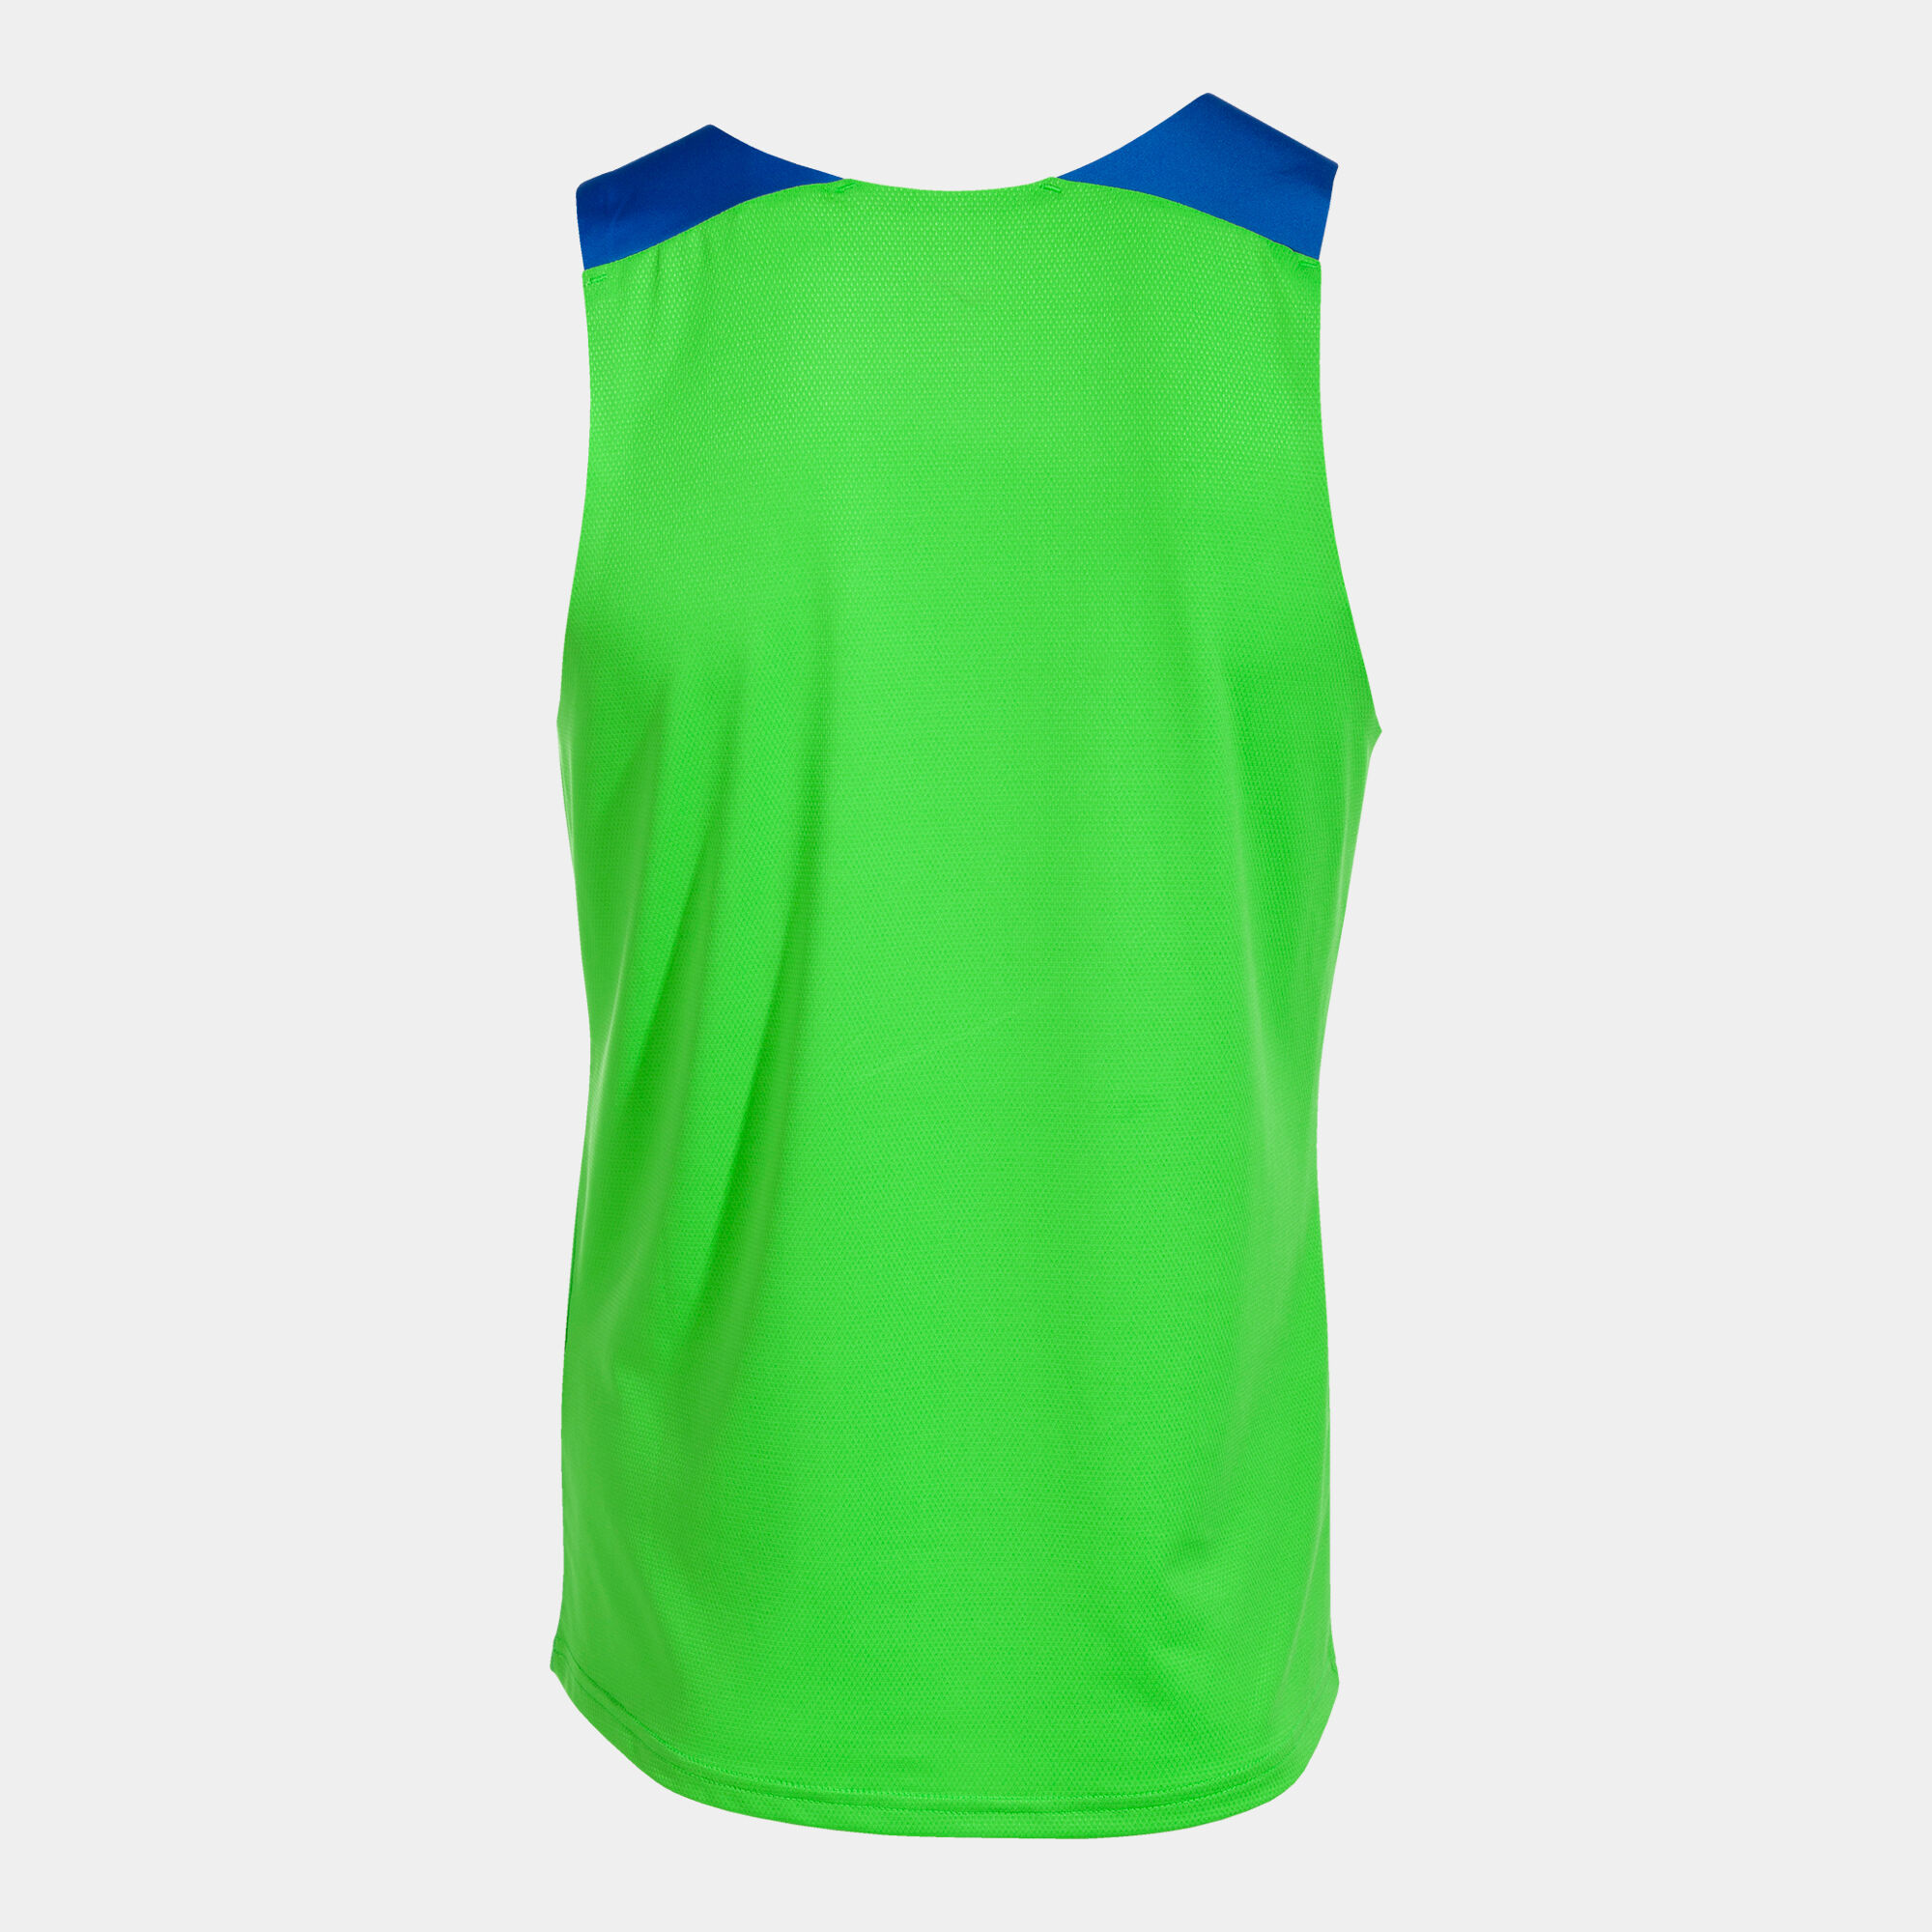 T-shirt de alça homem Elite X verde fluorescente azul royal